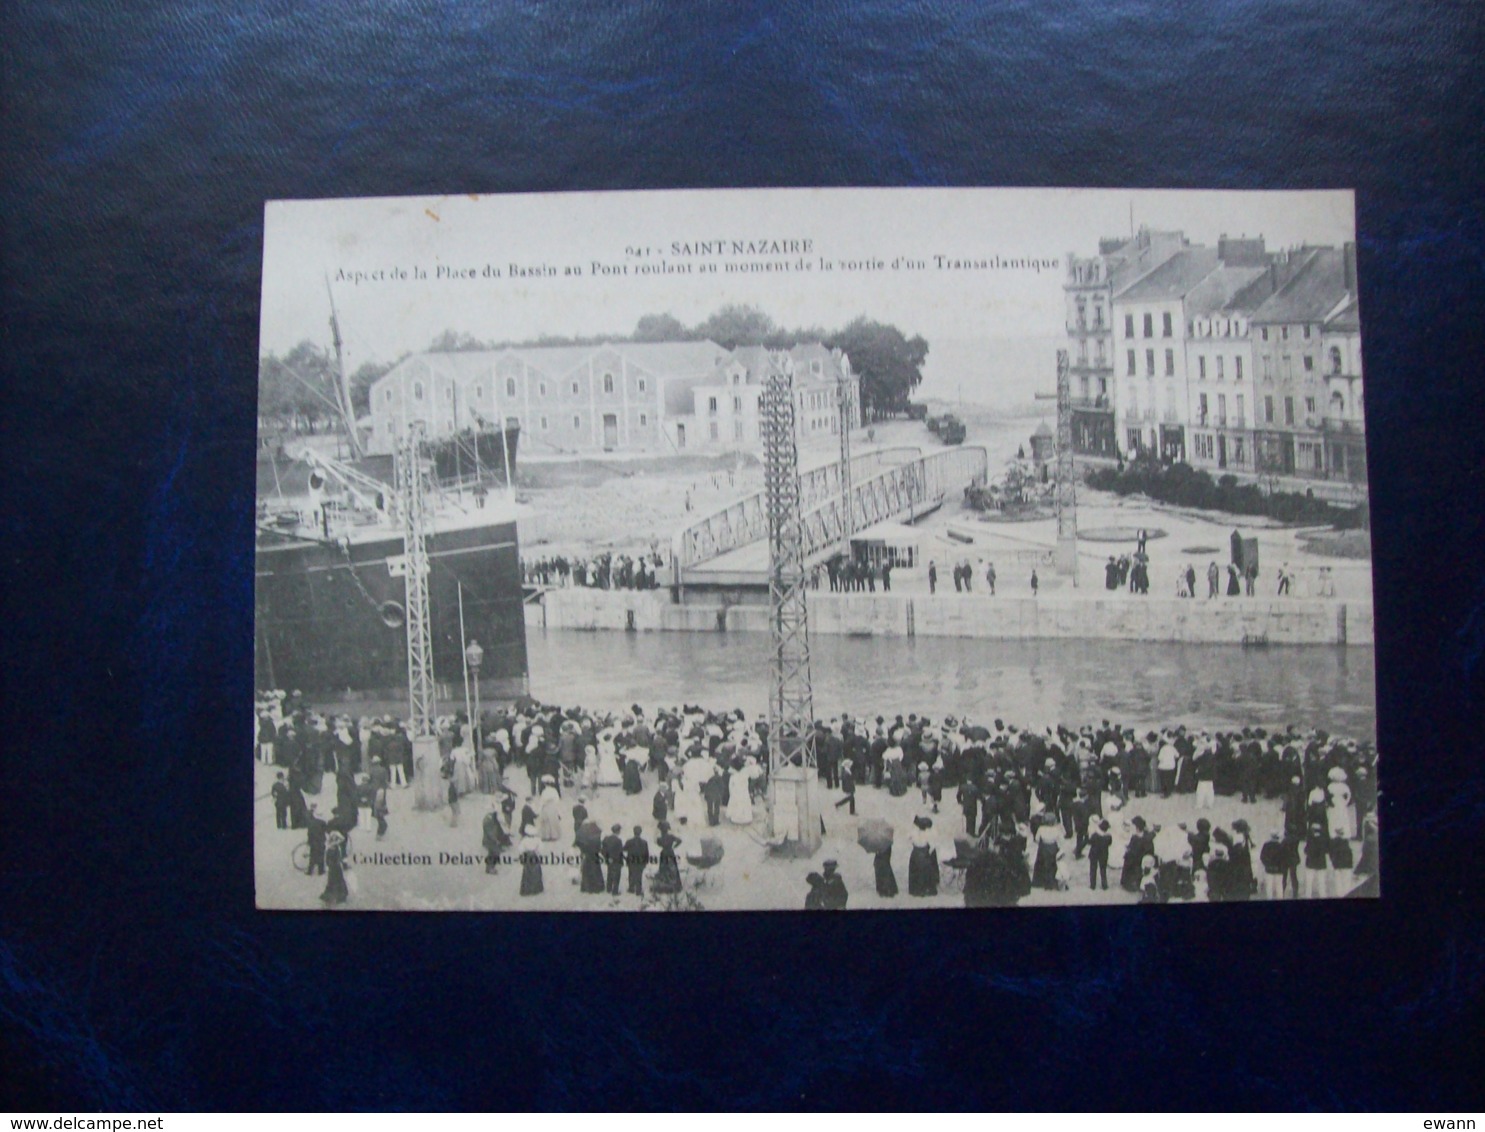 Carte Postale Ancienne De Saint-Nazaire: Aspect De La Place Du Bassin Au Pont Roulant Au Moment De La Sortie D'un Transa - Saint Nazaire